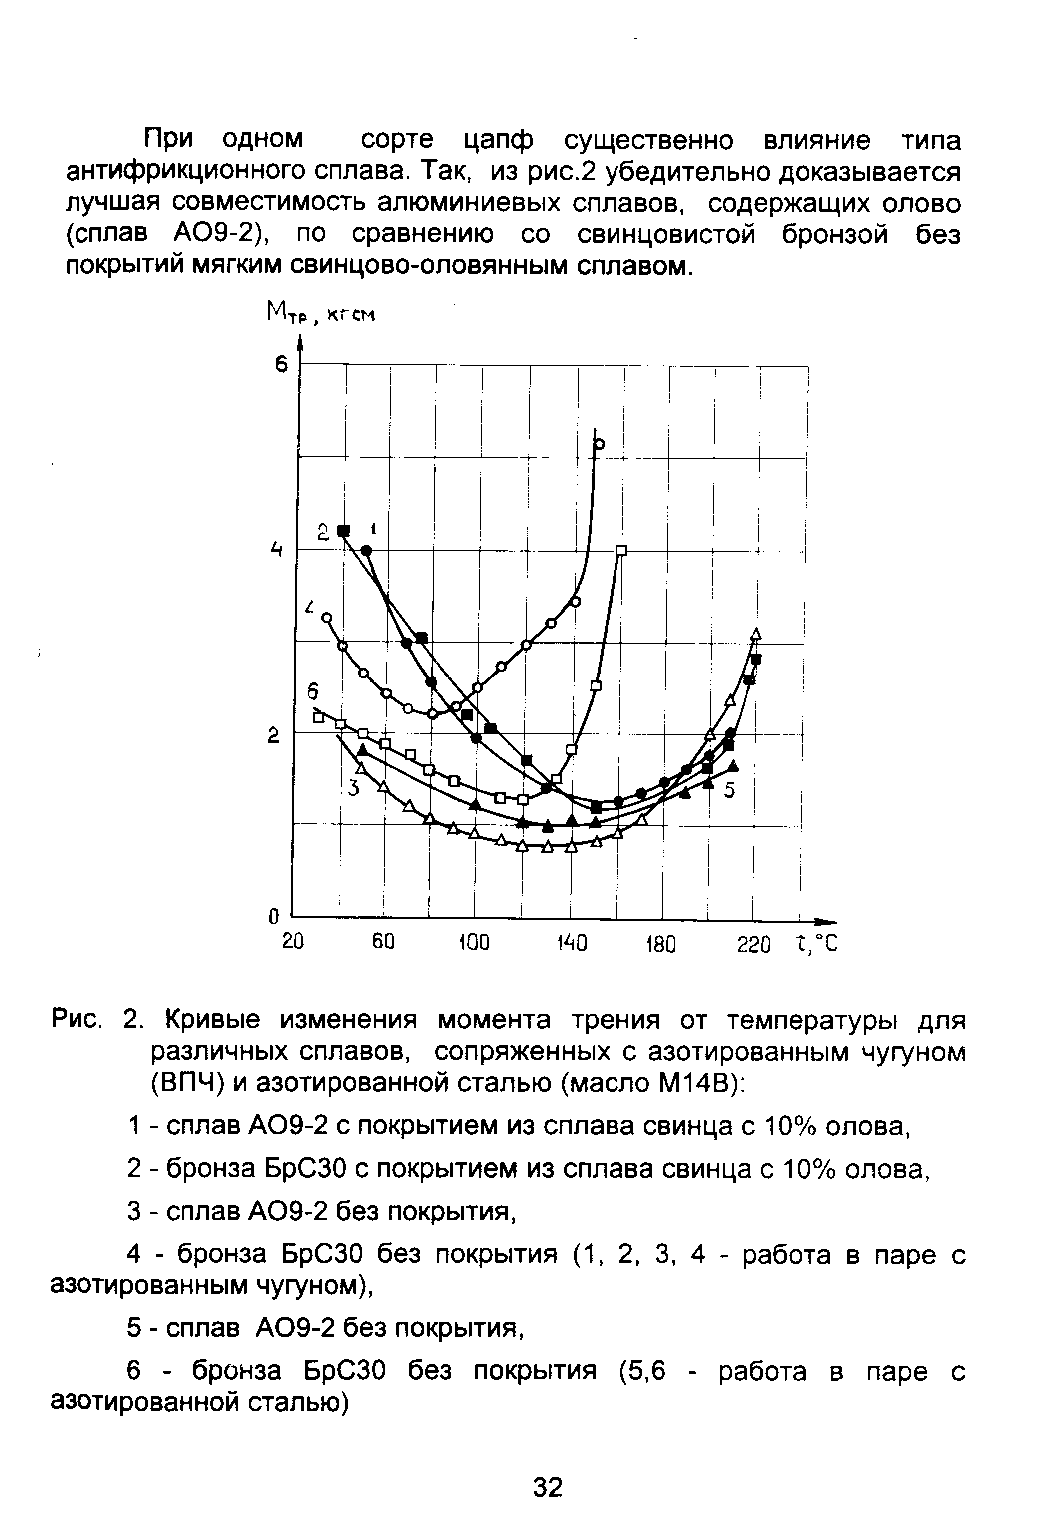 Рис. 2. Кривые изменения <a href="/info/241343">момента трения</a> от температуры для различных сплавов, сопряженных с азотированным чугуном (ВПЧ) и <a href="/info/92774">азотированной сталью</a> (масло М14В) 
